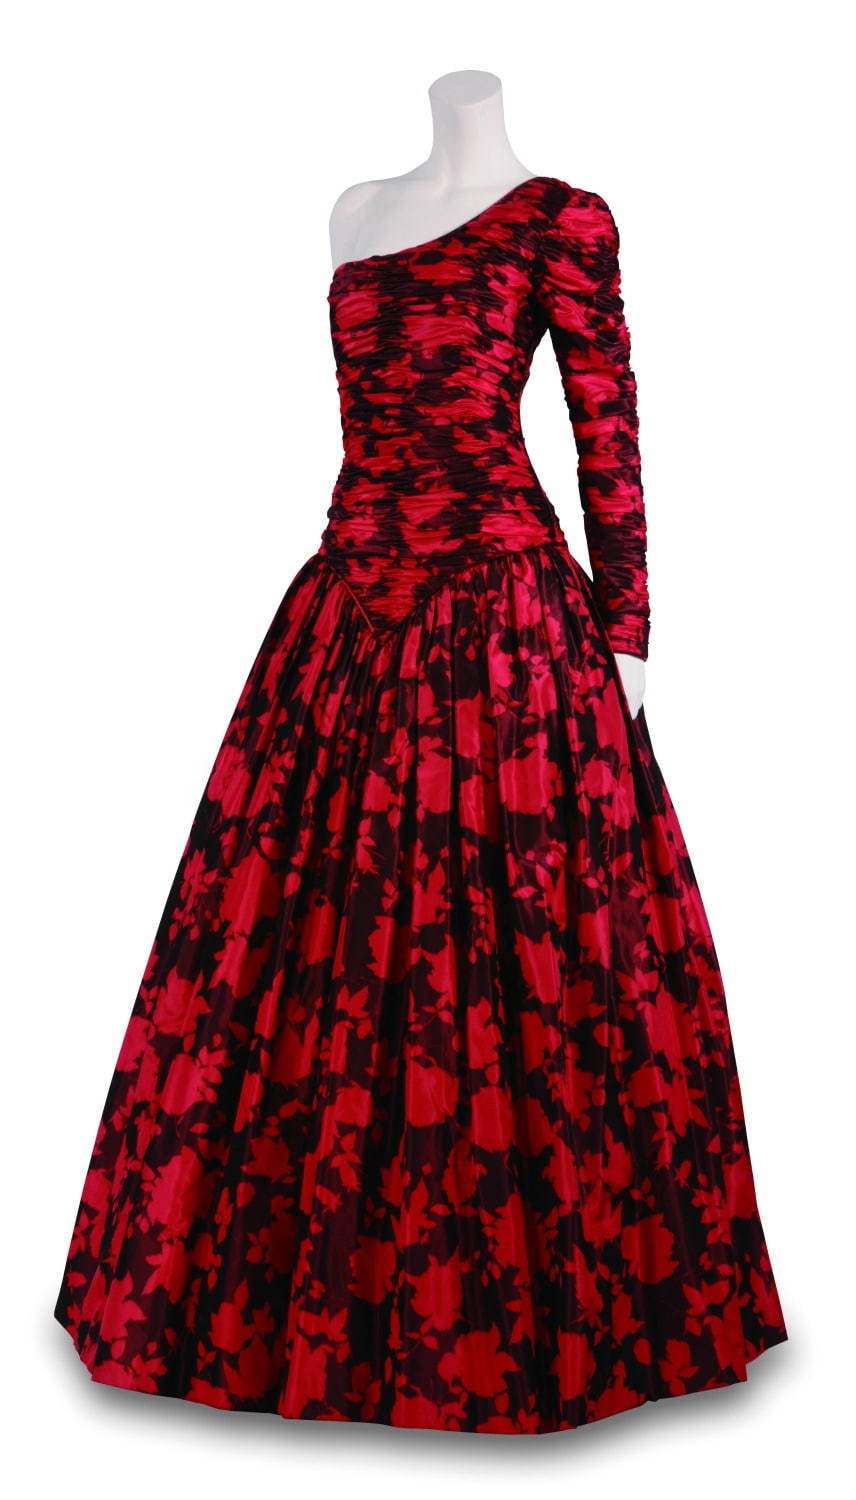 特別展示 イヴニング・ドレス 1988年 ダイアナ元皇太子妃着用
※寄託資料